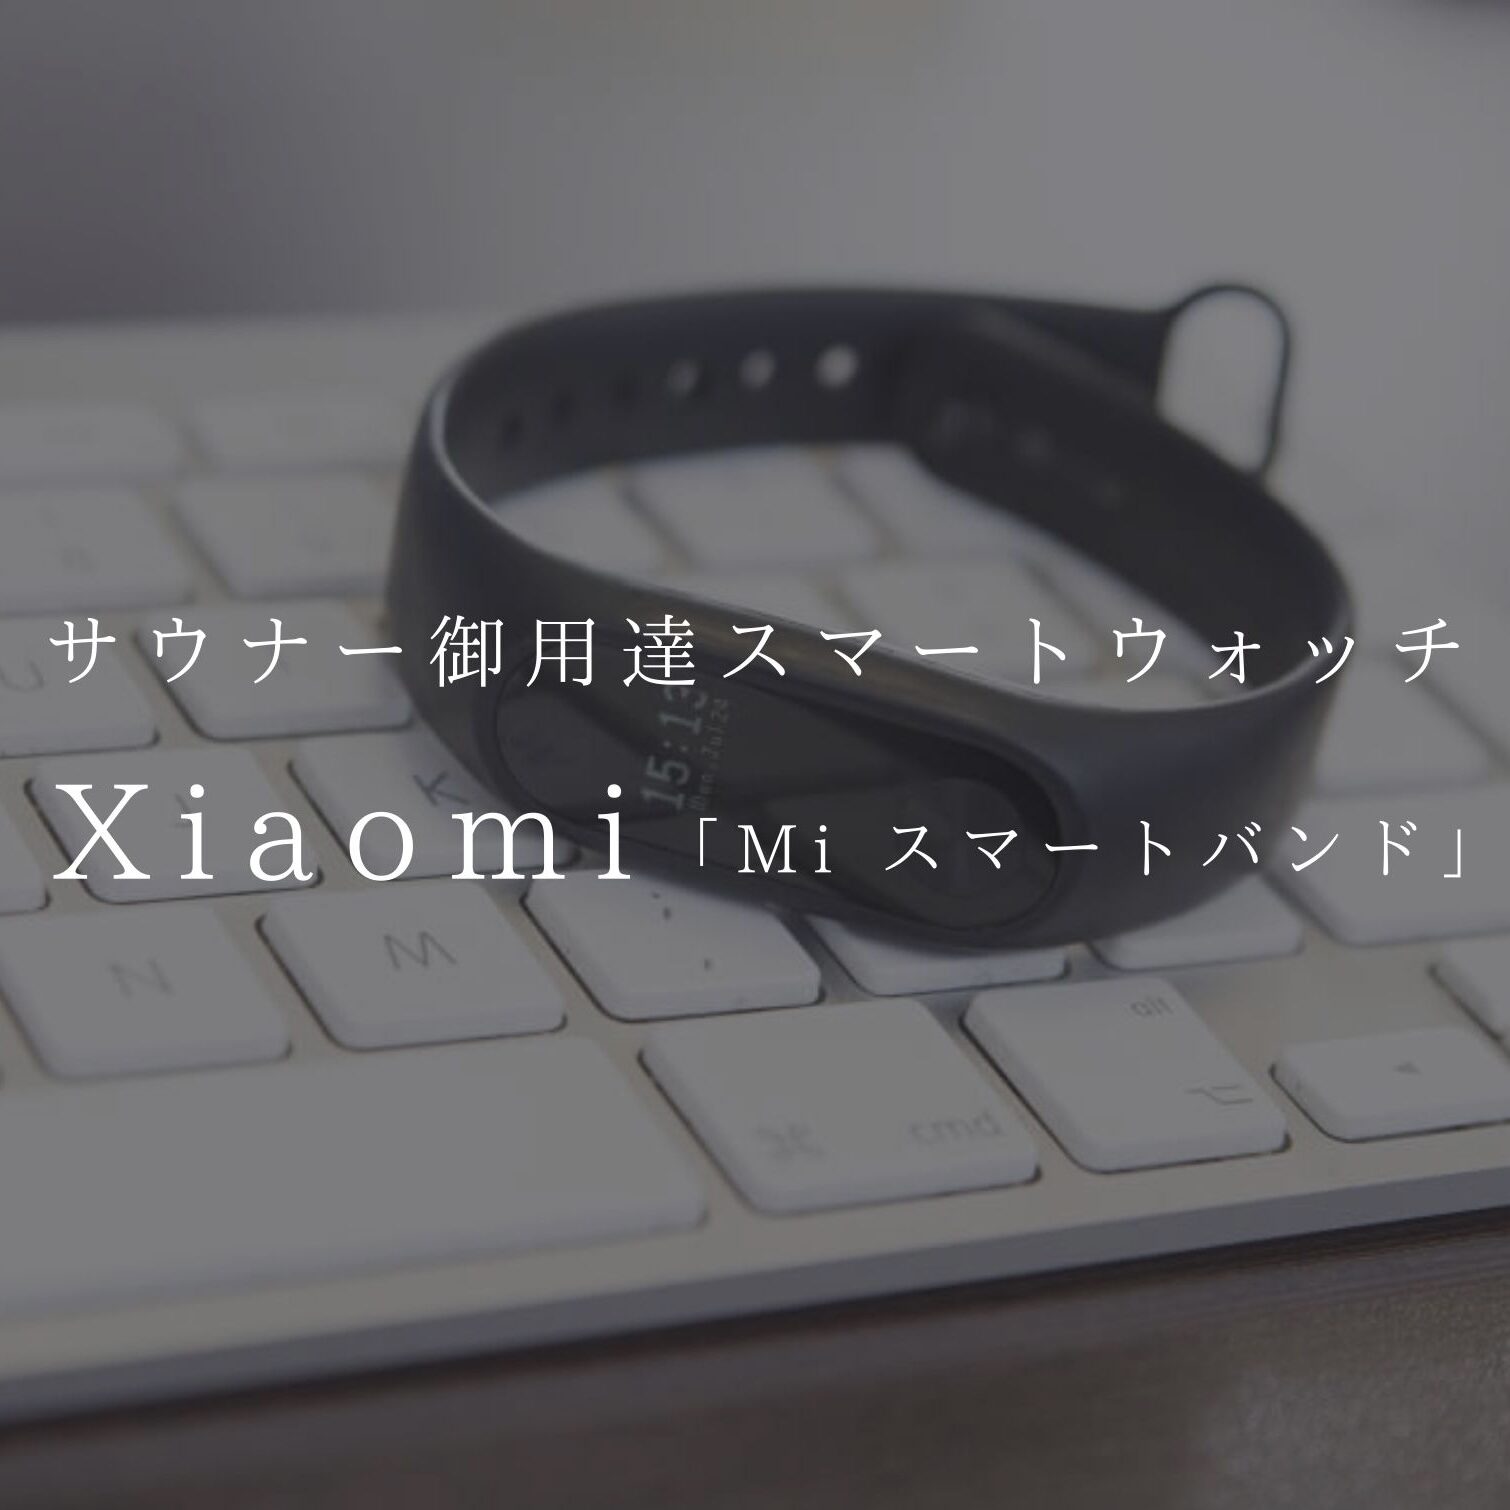 サウナー御用達スマートウォッチ『Xiaomi Mi スマートバンド』【もはや主治医】